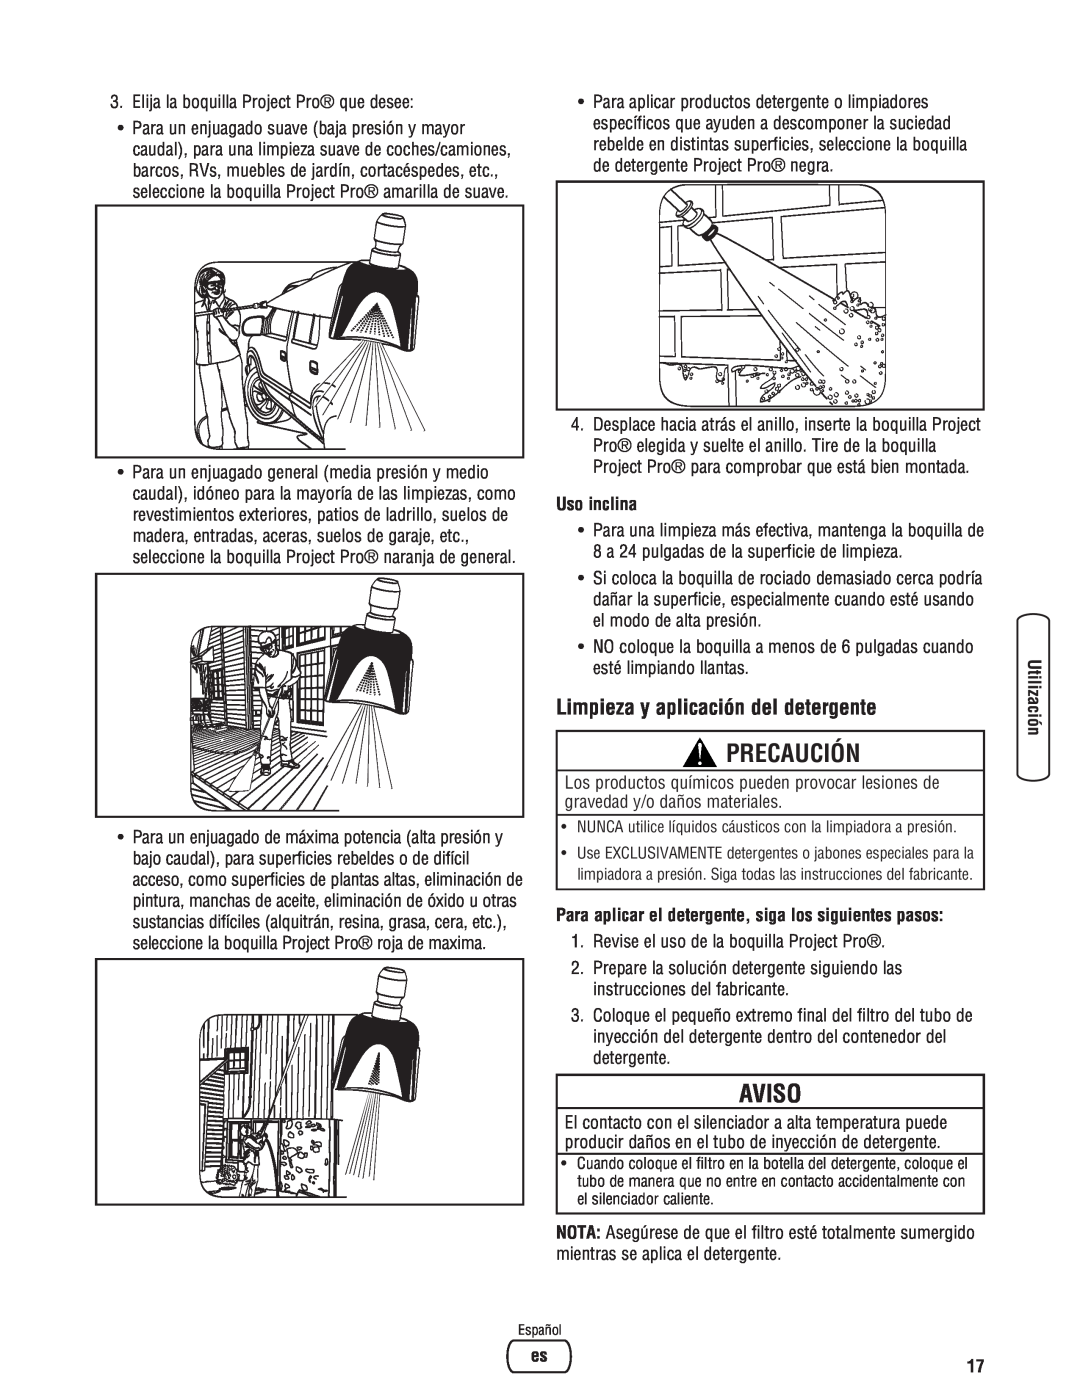 Briggs & Stratton 020364-0 manual Precaución, Aviso, Limpieza y aplicación del detergente, Uso inclina 